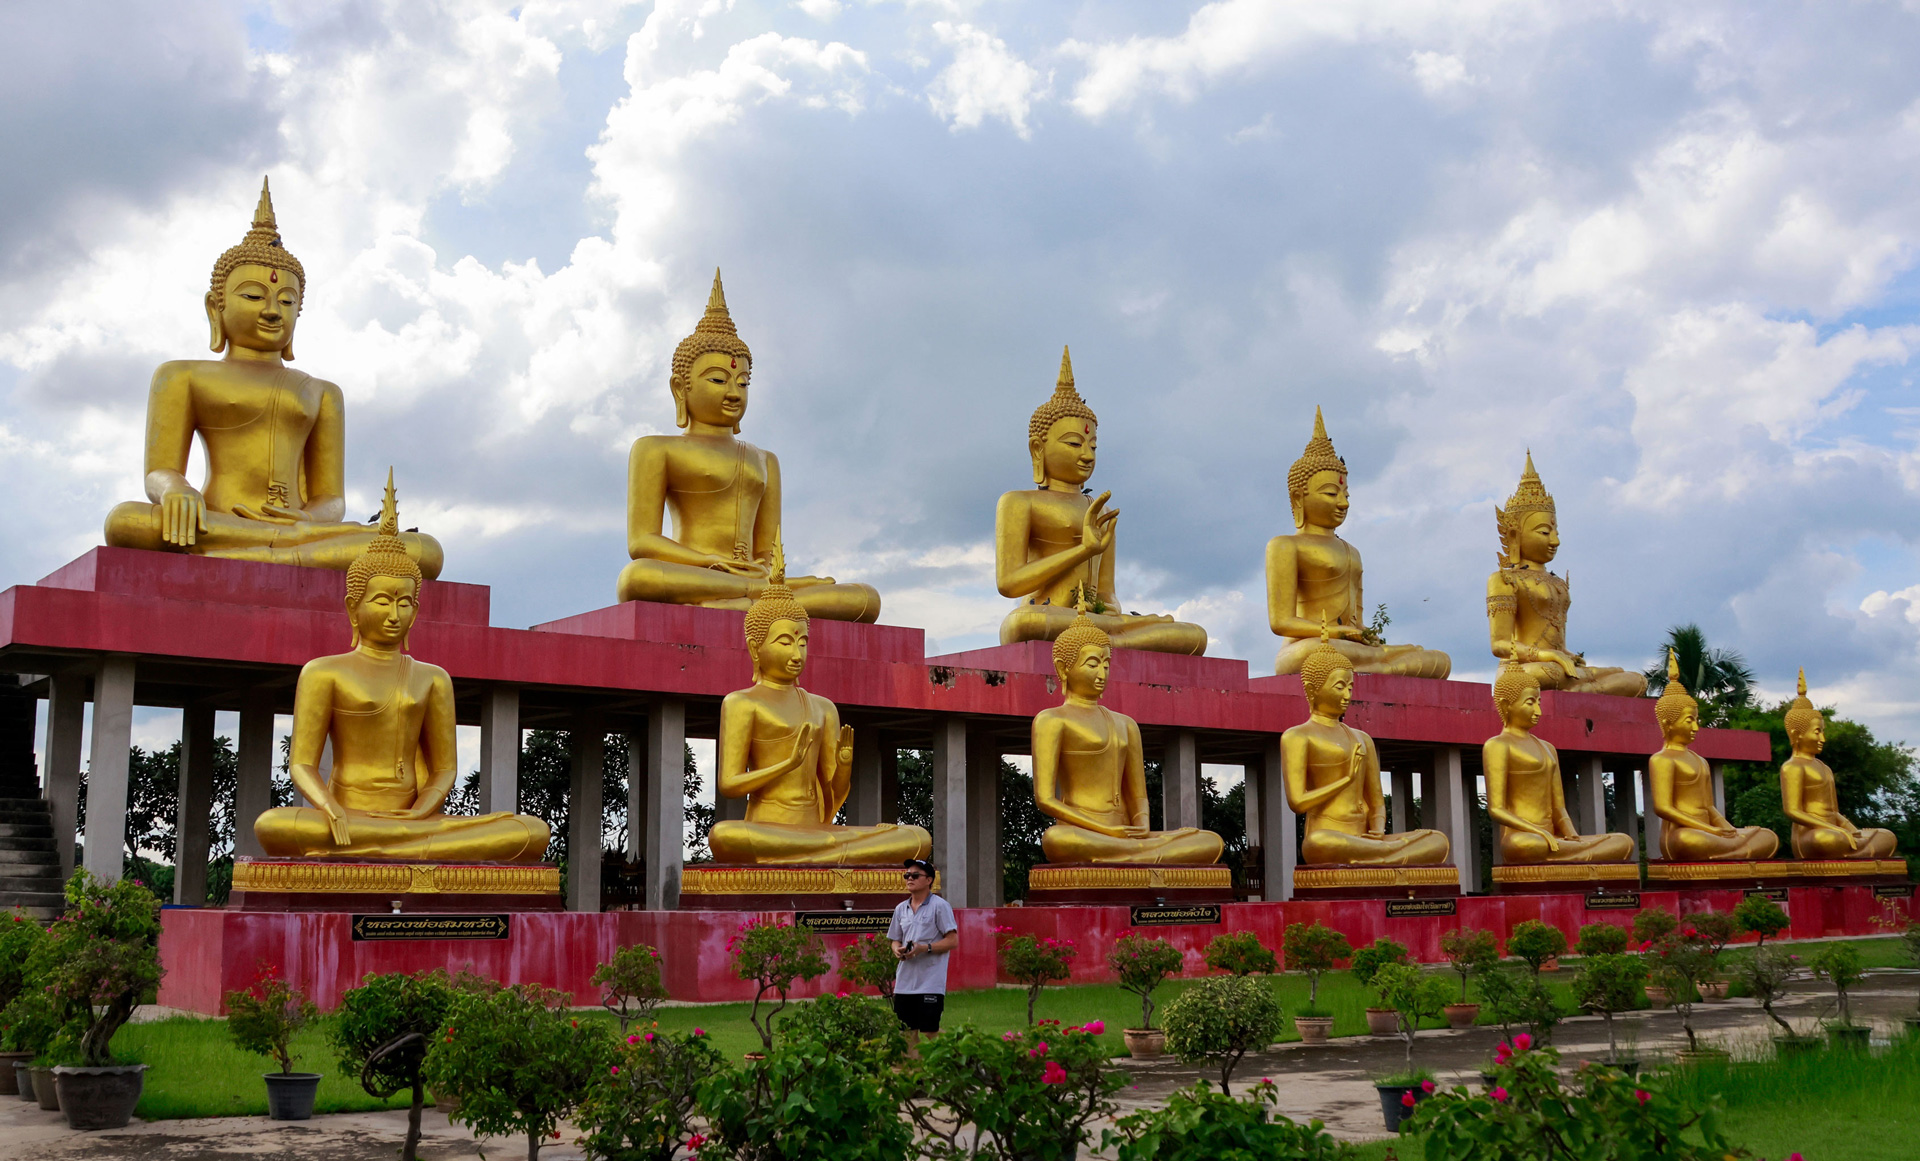 Rất nhiều tượng lớn, nhỏ được bày ở cả trong và ngoài khuôn viên chùa